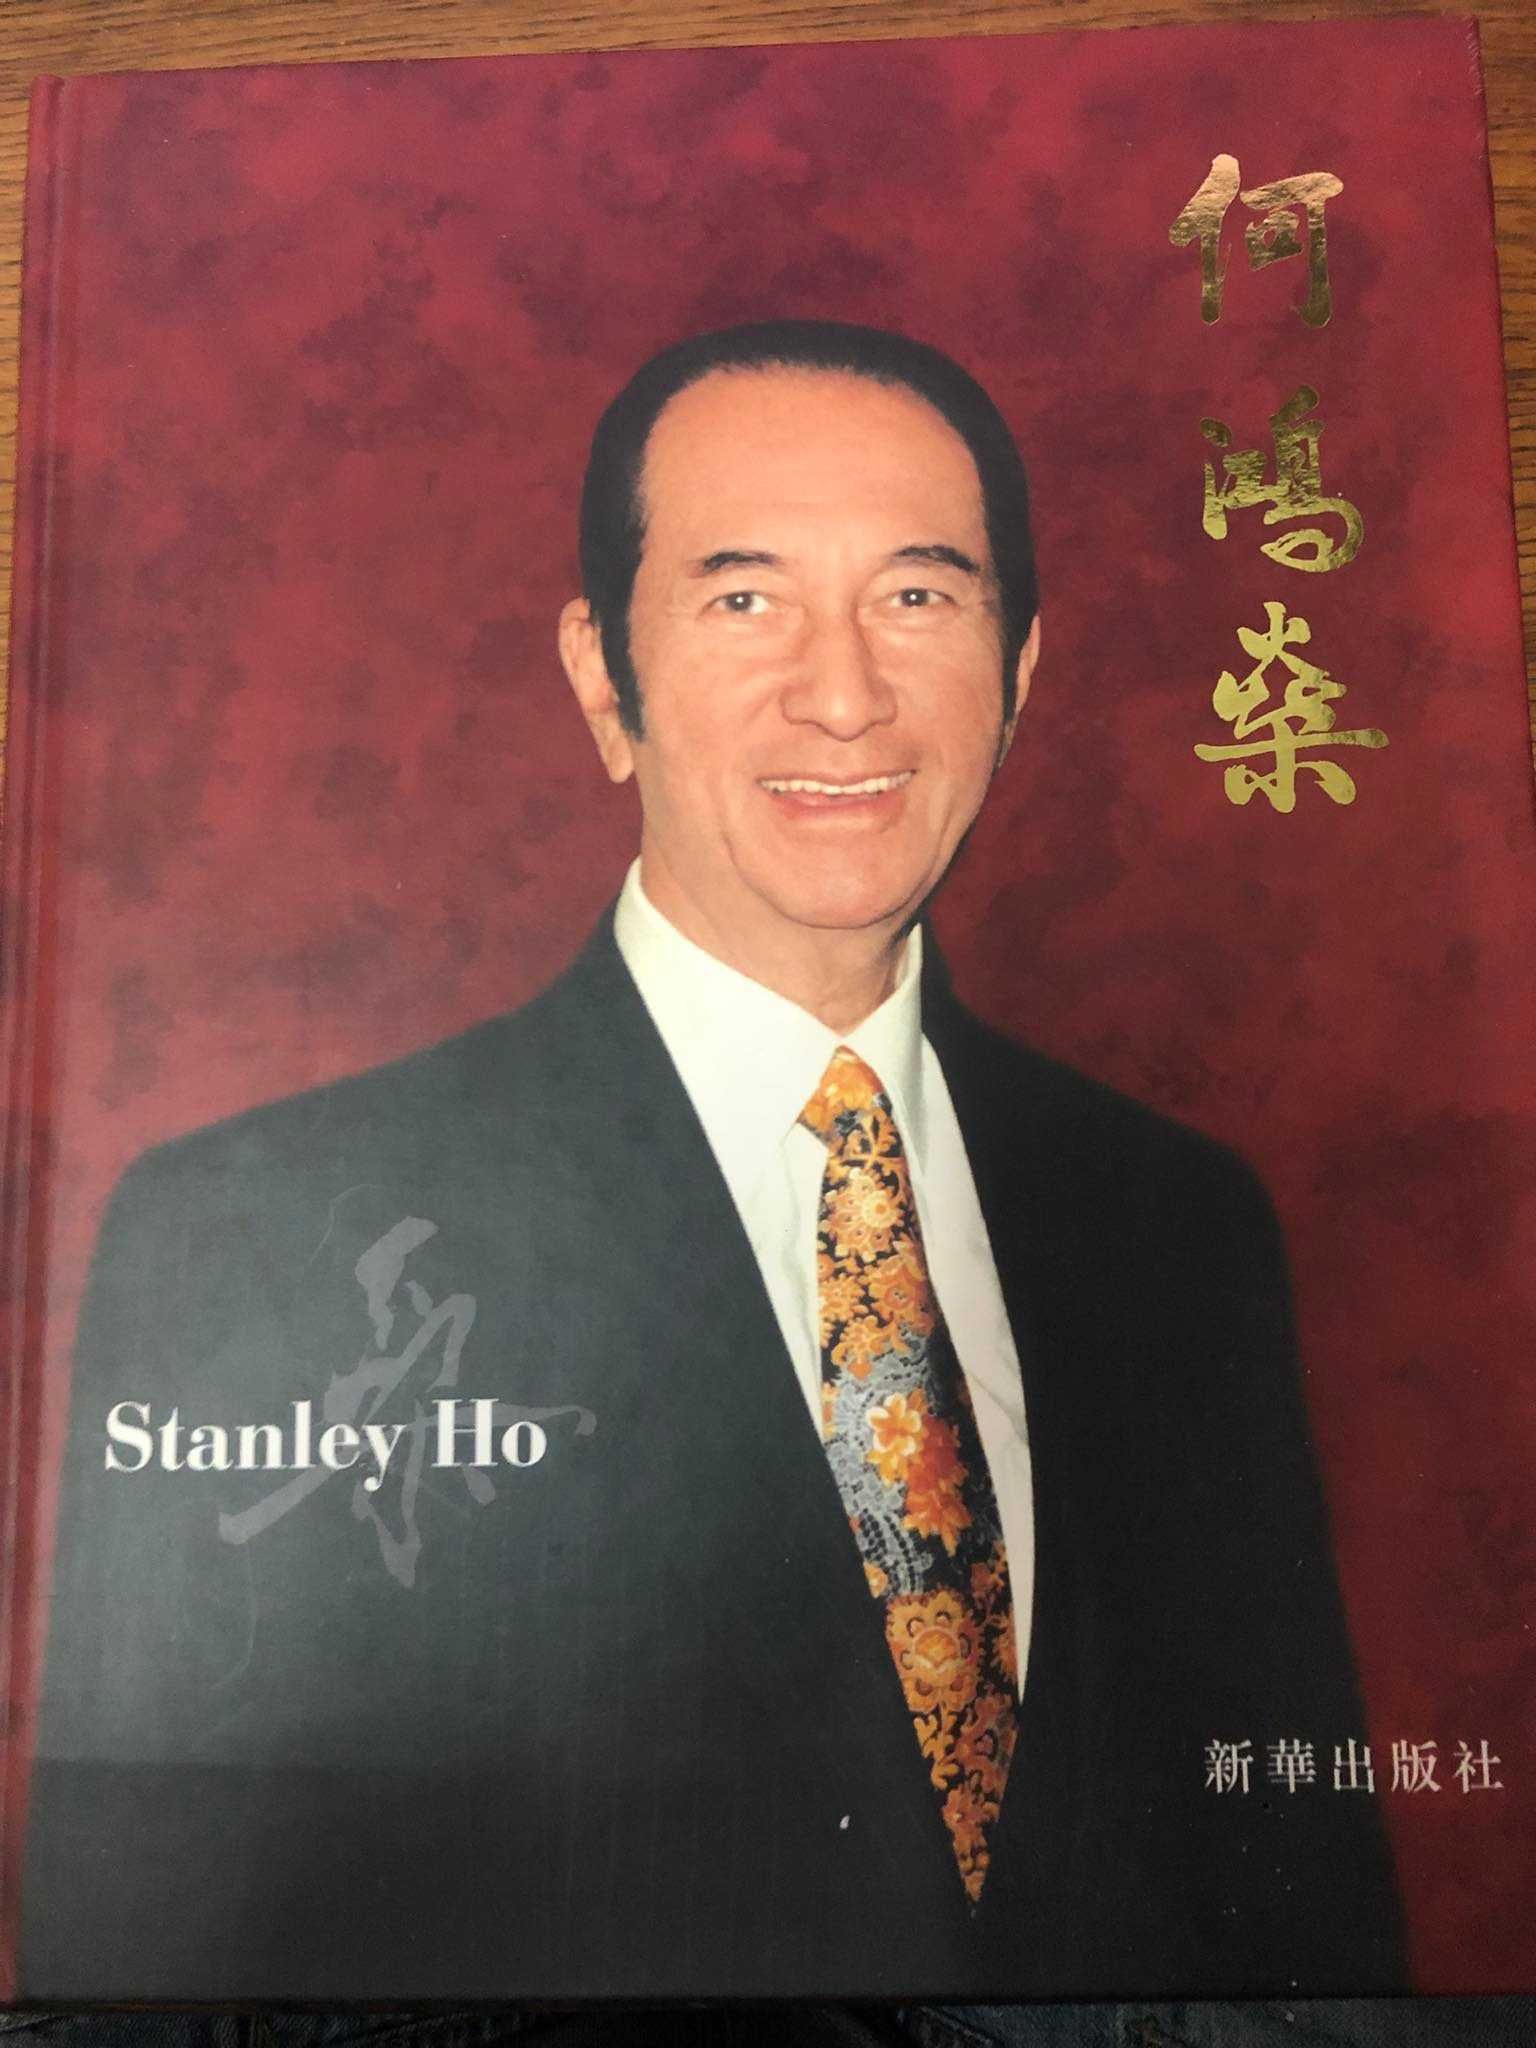 Stanley ho biografia photo book